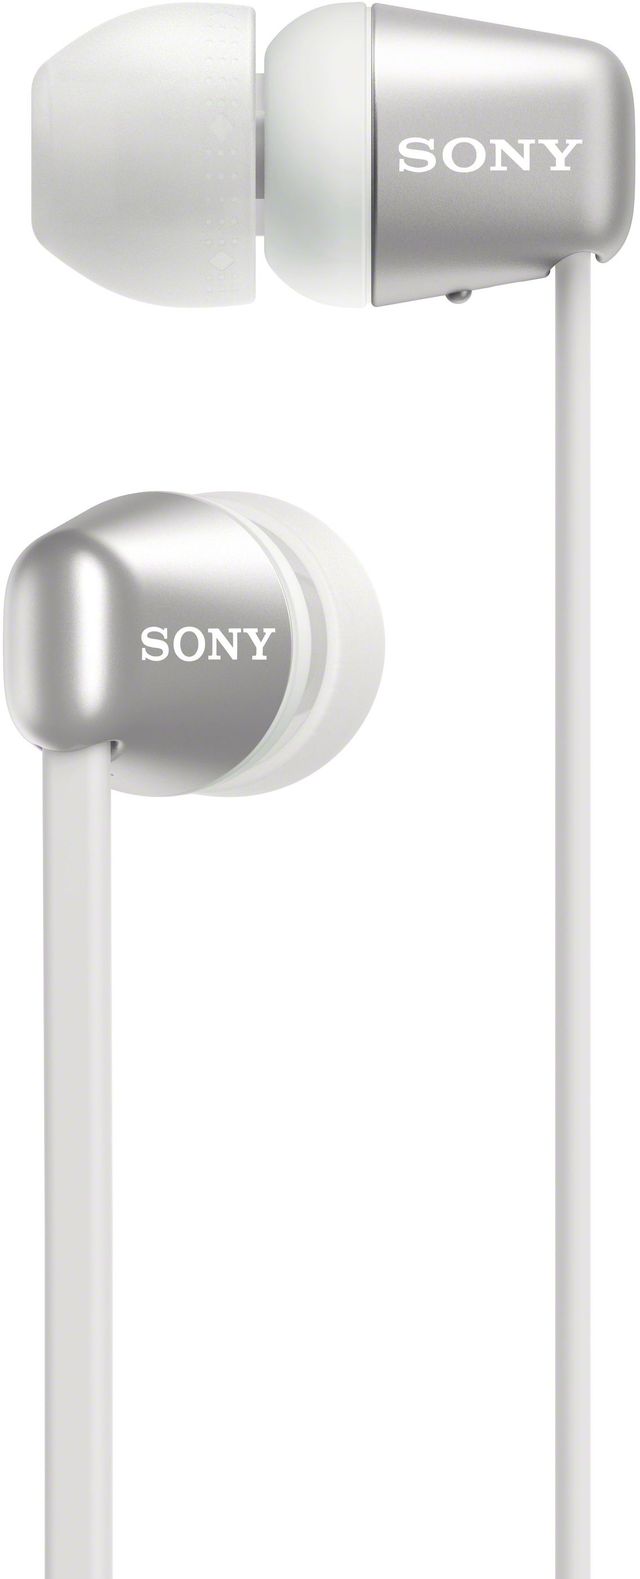 Sony WI-C310 Black Wireless In-Ear Headphones 11